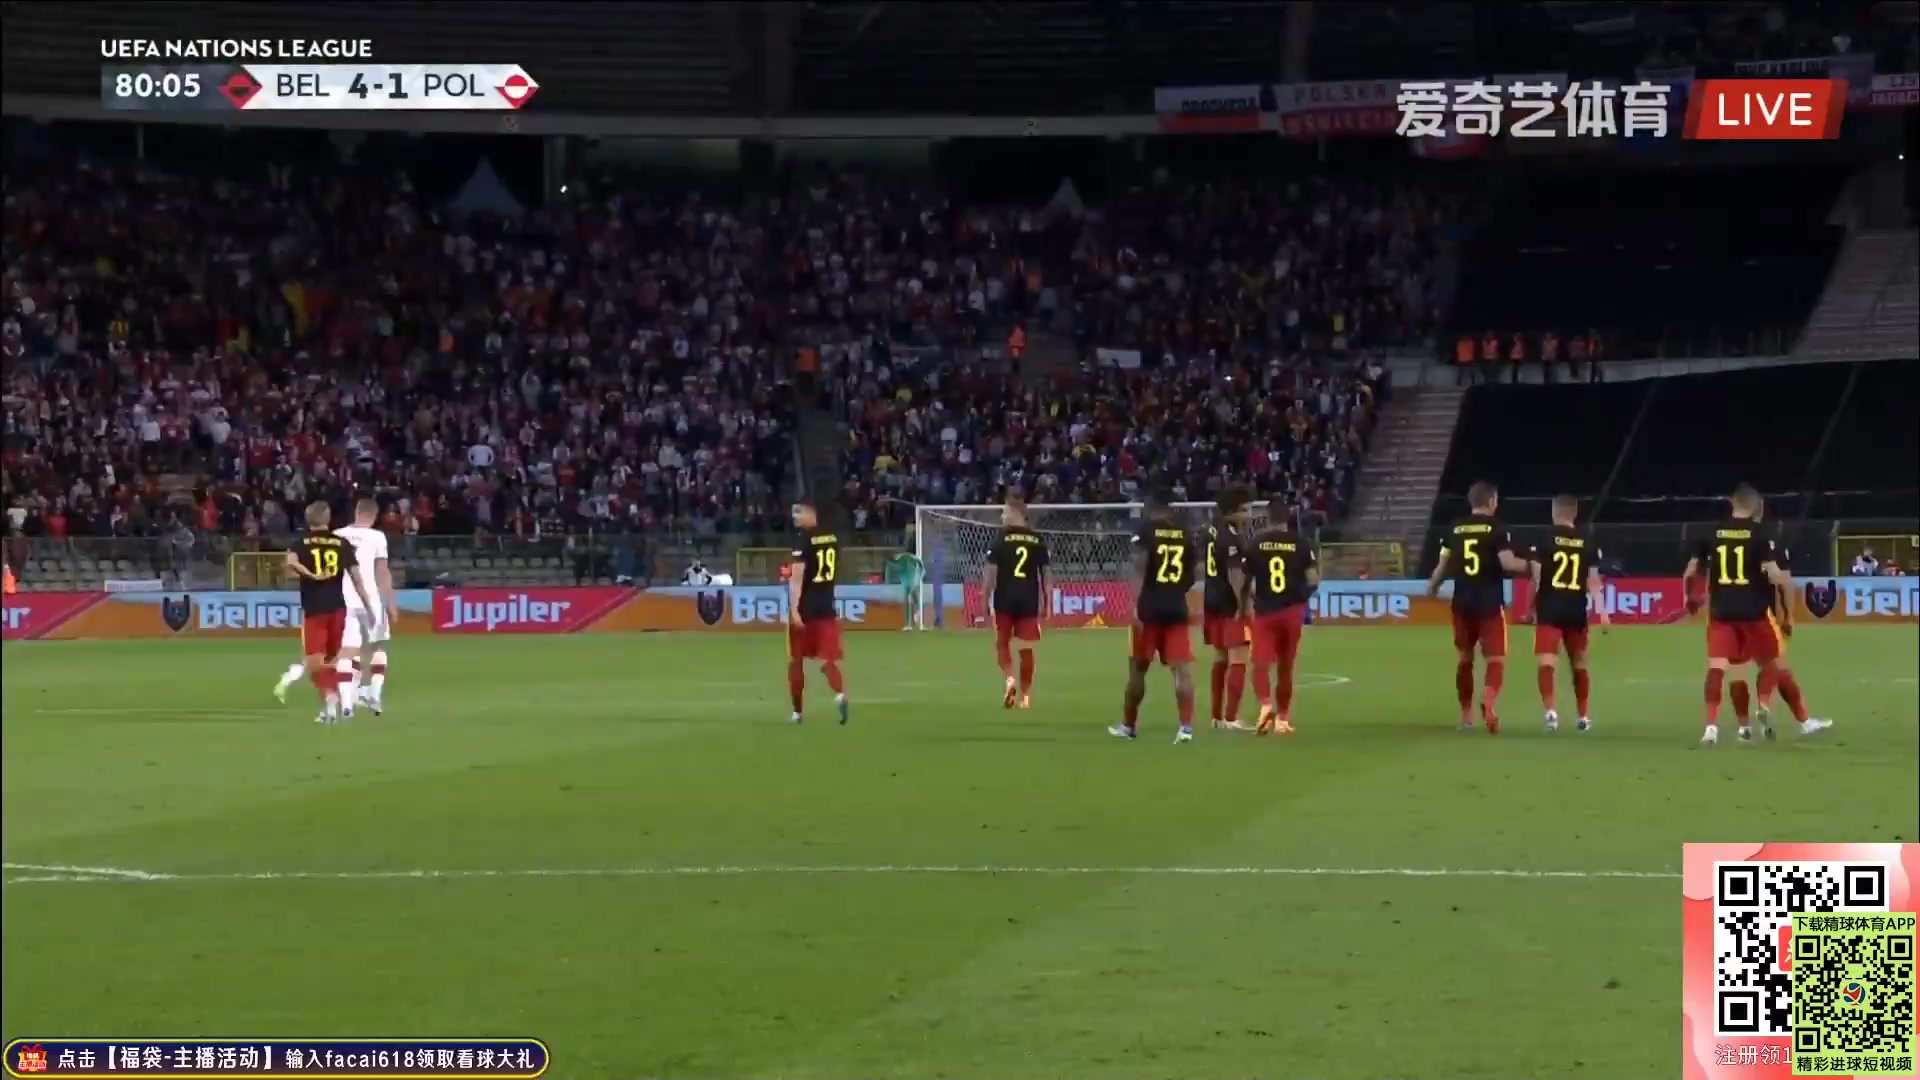 UEFA  NL Belgium Vs Poland Leandro Trossard Goal in 80 min, Score 4:1